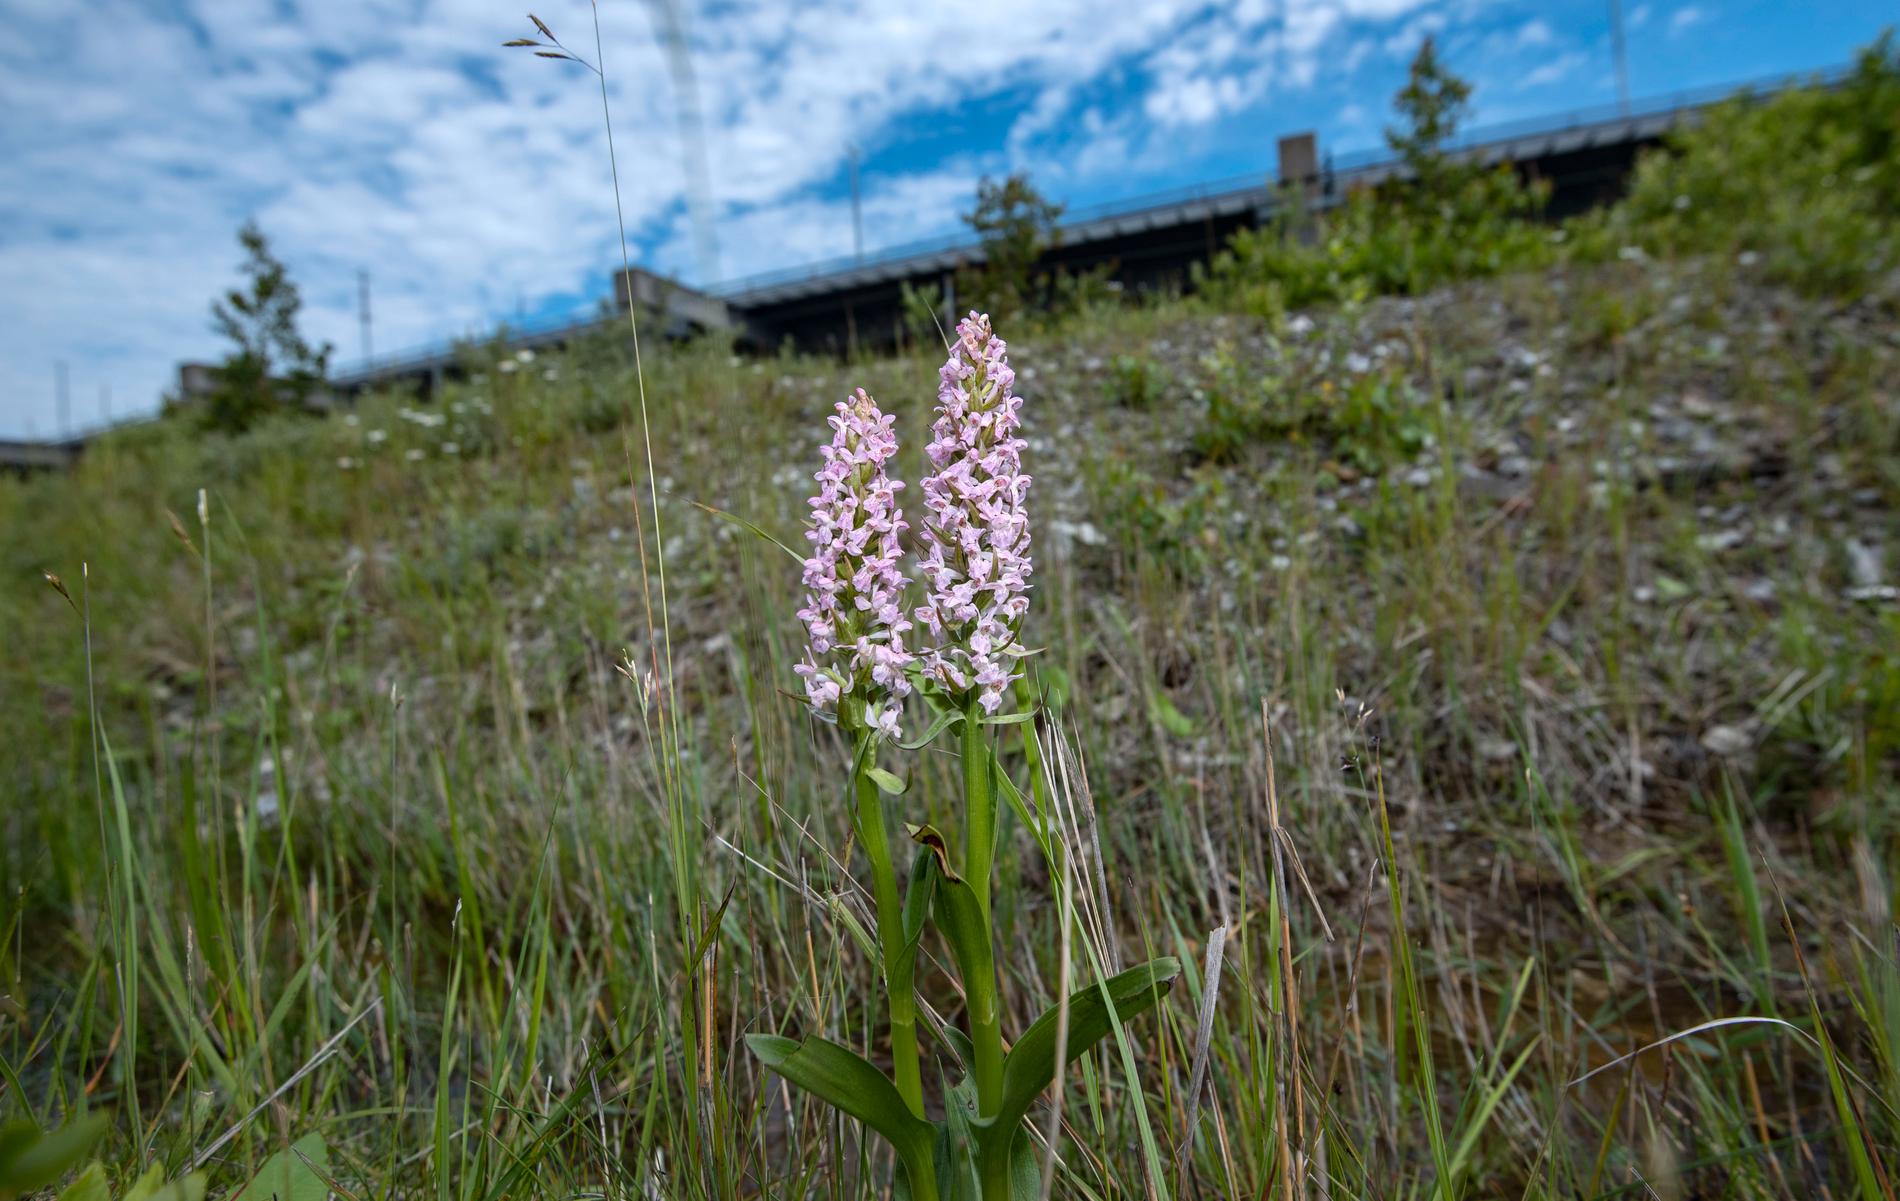 Ängsnycklar, den sällsynta orkidétypen, finns kvar på ön Pepparholm i Öresund trots förra sommarens torka.